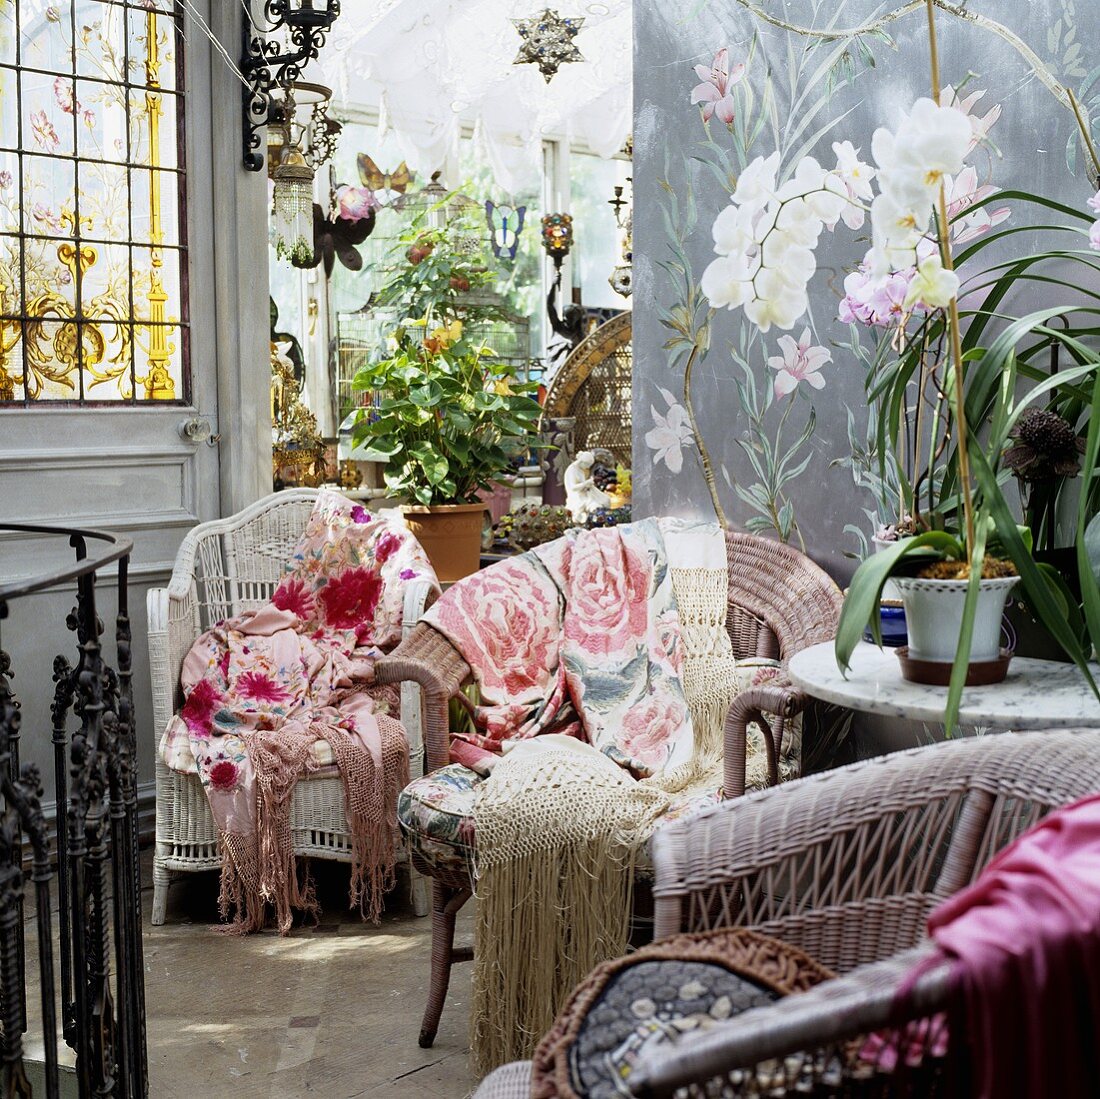 Korbstühle mit bunten Überwürfen Blumen in Töpfen im Vorraum mit Blick in Wintergarten